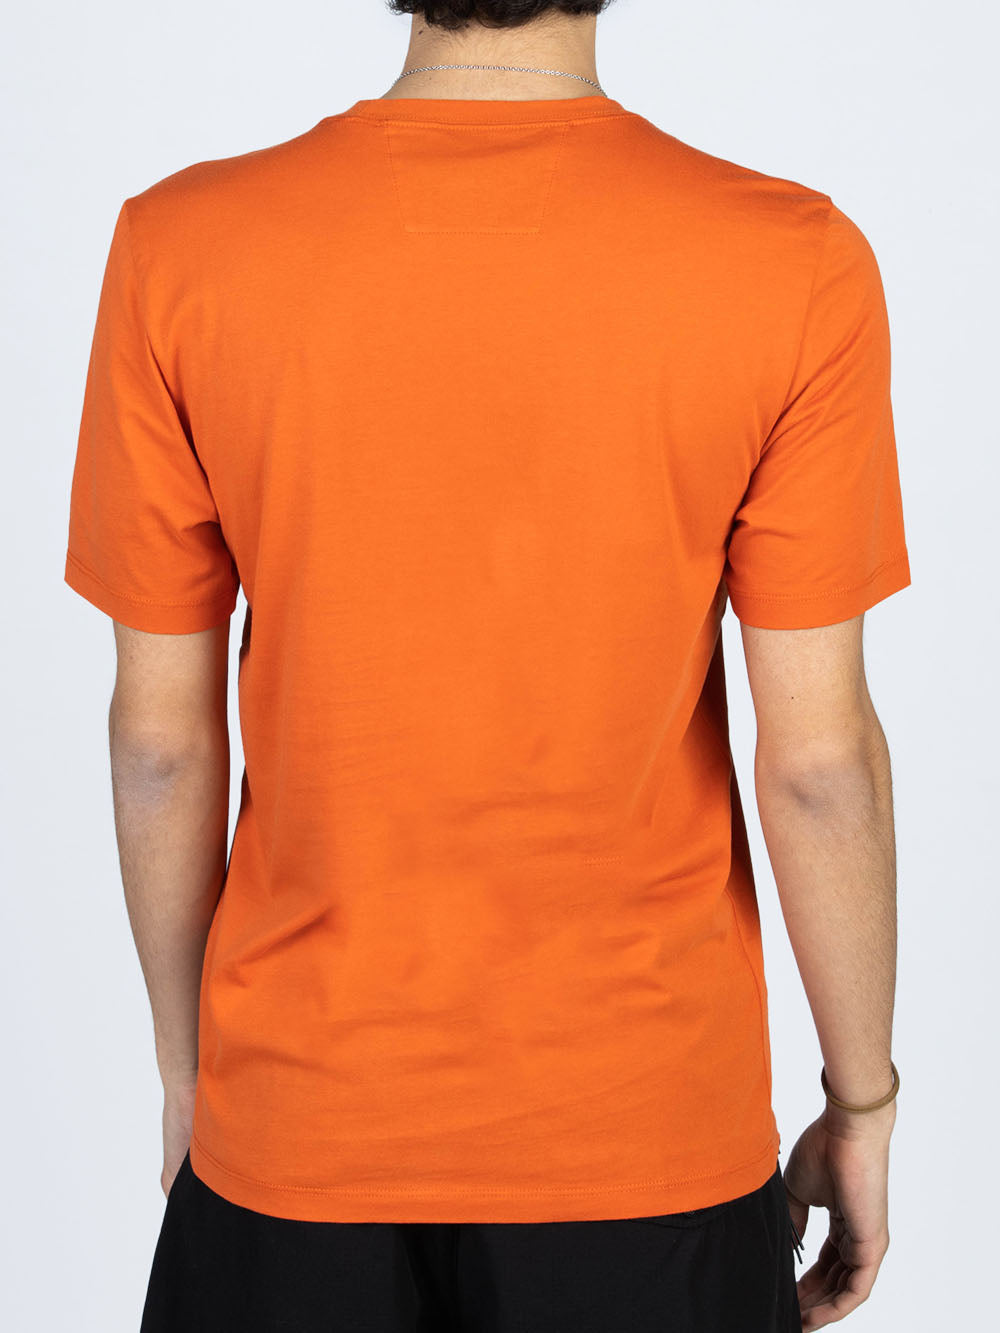 C.P. COMPANY T-shirt in jersey di cotone arancione arancione Urbanstaroma